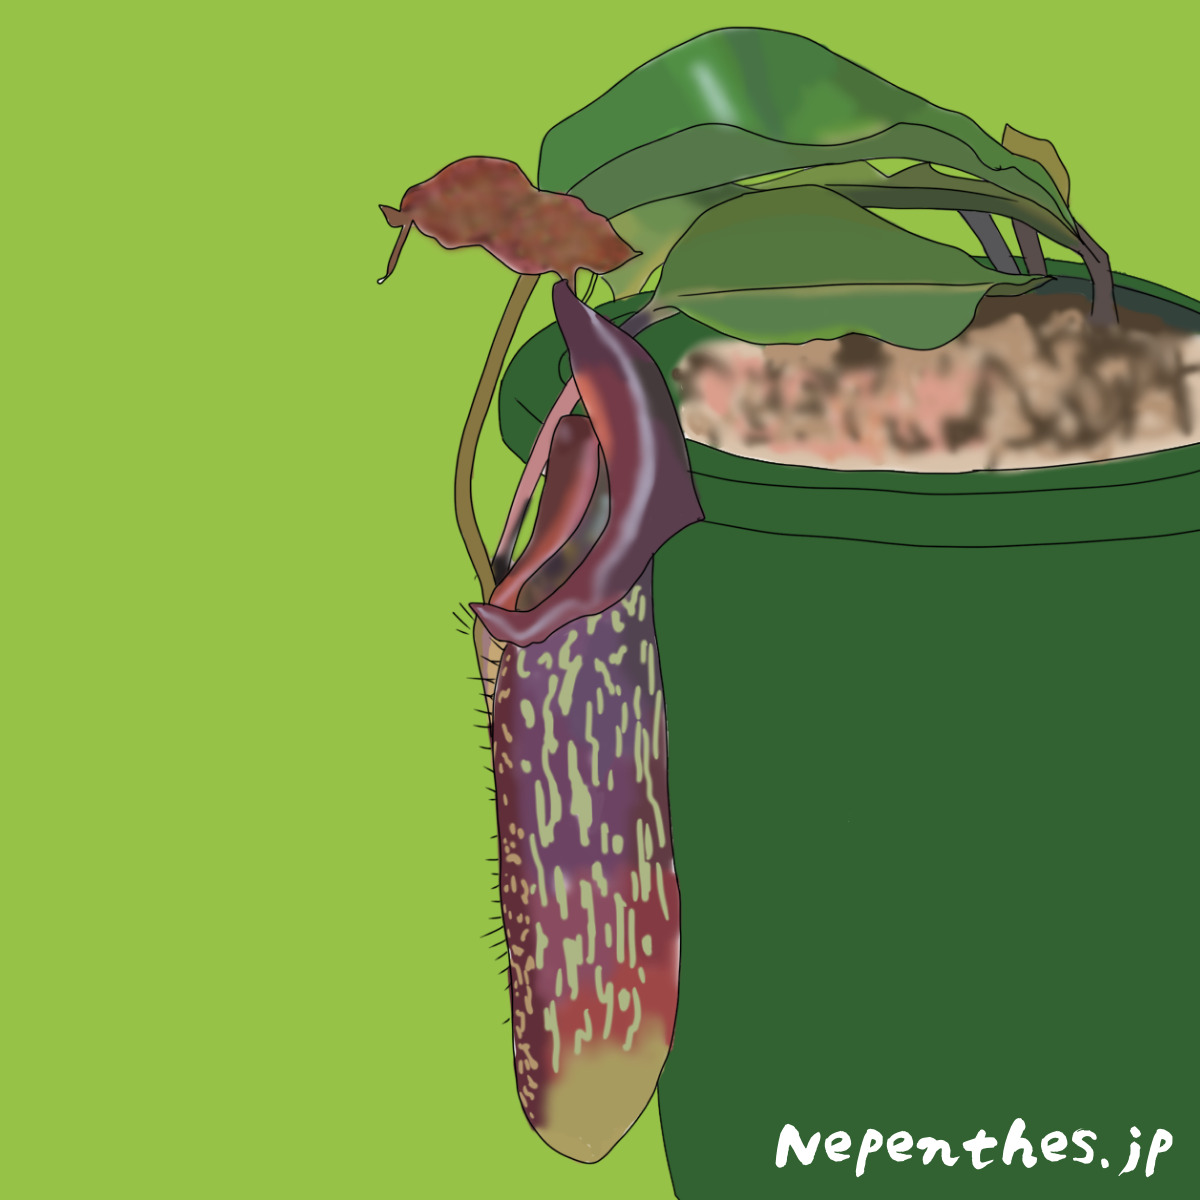 紫色の斑点が人気のネペンテス マキシマ ムラサキウツボカズラ の基本情報から育て方 オススメの栽培方法など ネペ吉のブログ